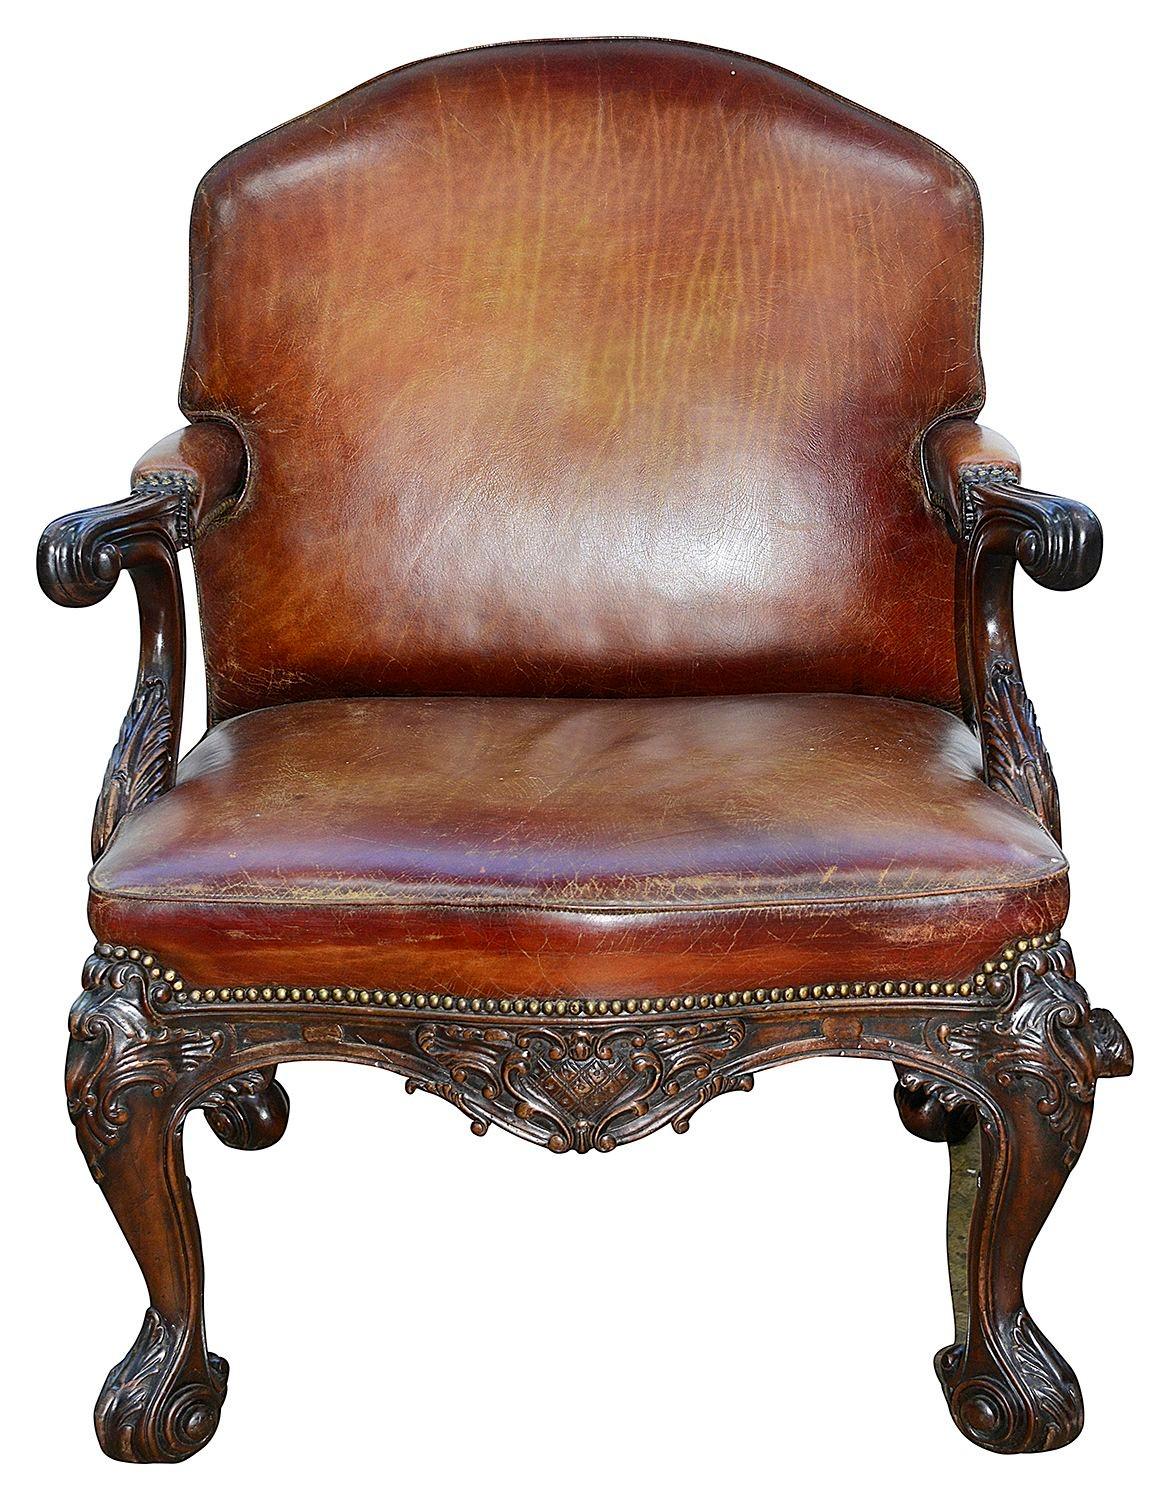 Ein sehr hansome 18. Jahrhundert Stil Mahagoni Leder gepolsterten Sessel, mit einer wunderbaren verblichenen Farbe tan Farbe auf die Haut, Messing beschlagen. Klassische Hand geschnitzt Scrollen und foliate Dekoration auf die Show Holz, auf vier